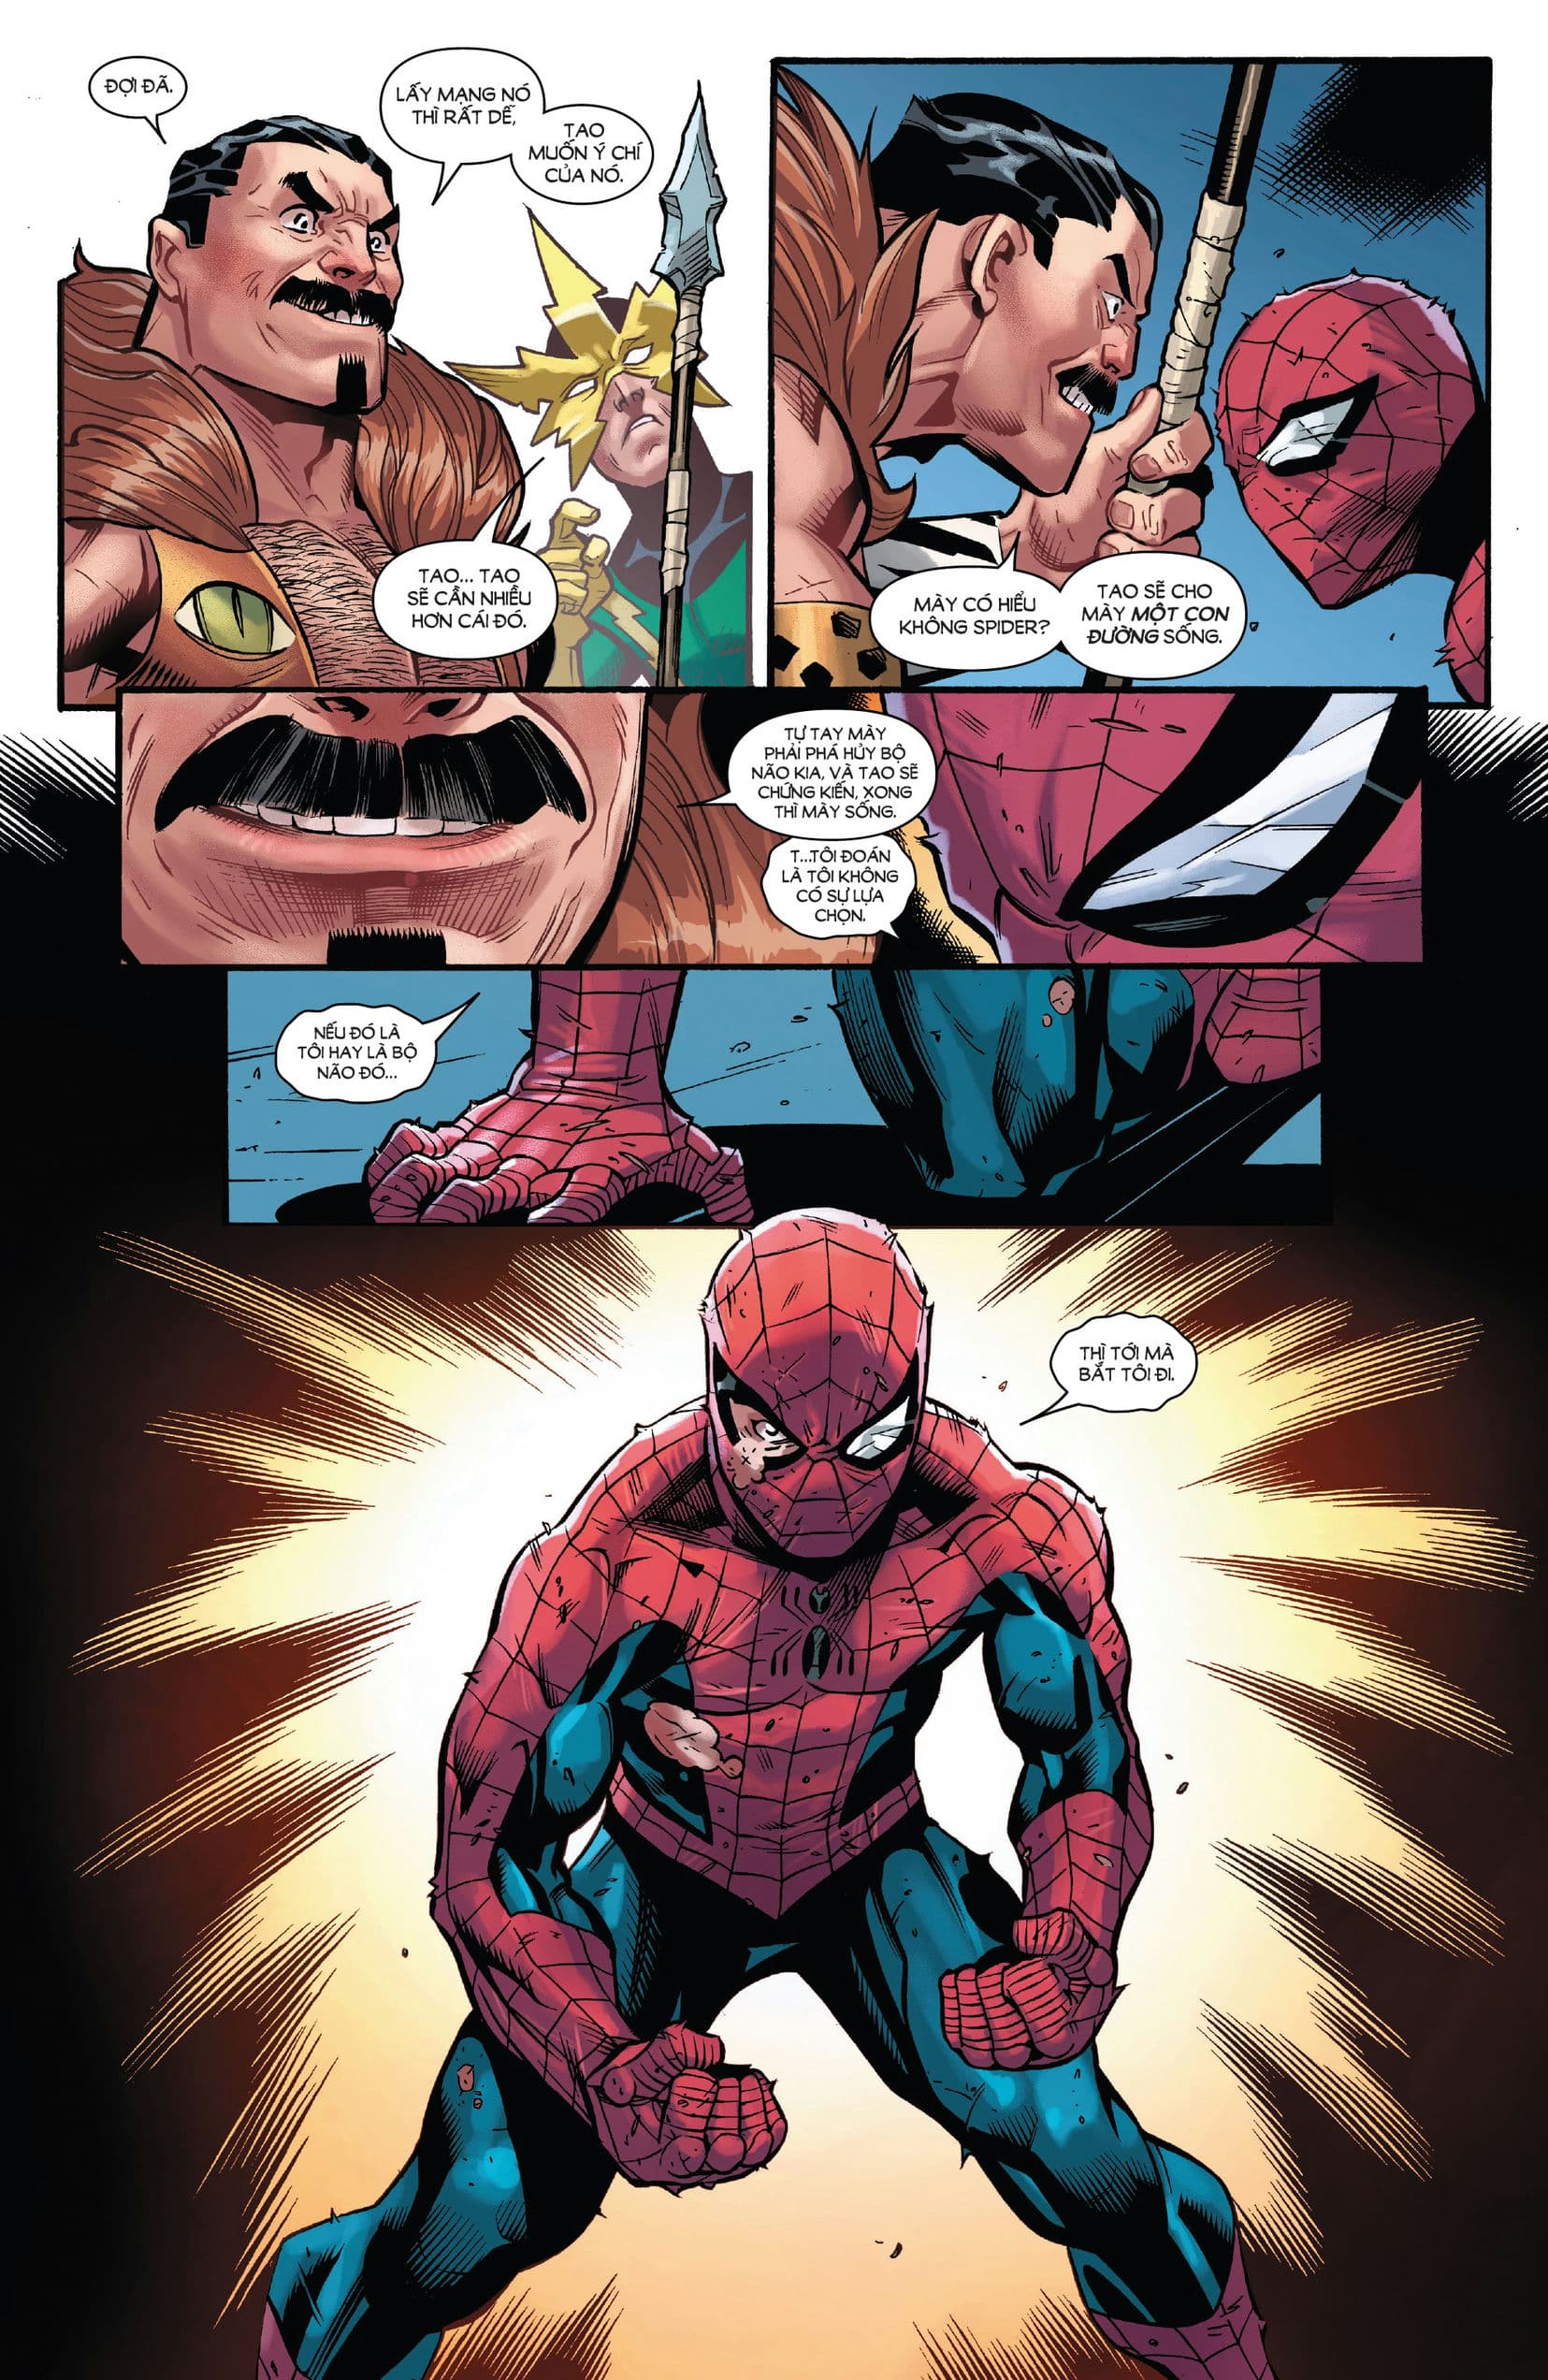 https://langgeek.net/wp-content/webpc-passthru.php?src=https://langgeek.net/wp-content/uploads/2023/08/Amazing-Spider-Man-2022-006-064.jpg&nocache=1